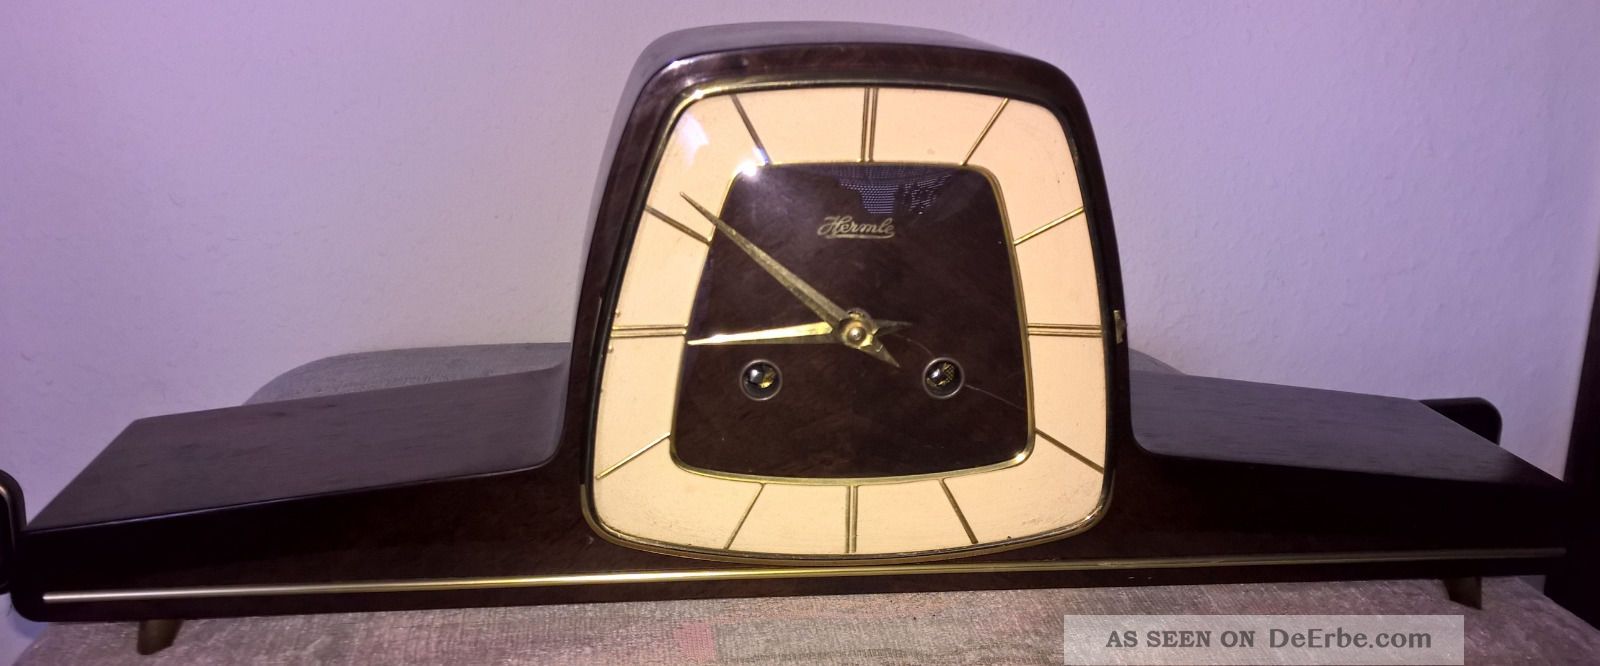 Uhr Kaminuhr Hermle Echtholz Nussbaum Gefertigt nach 1950 Bild